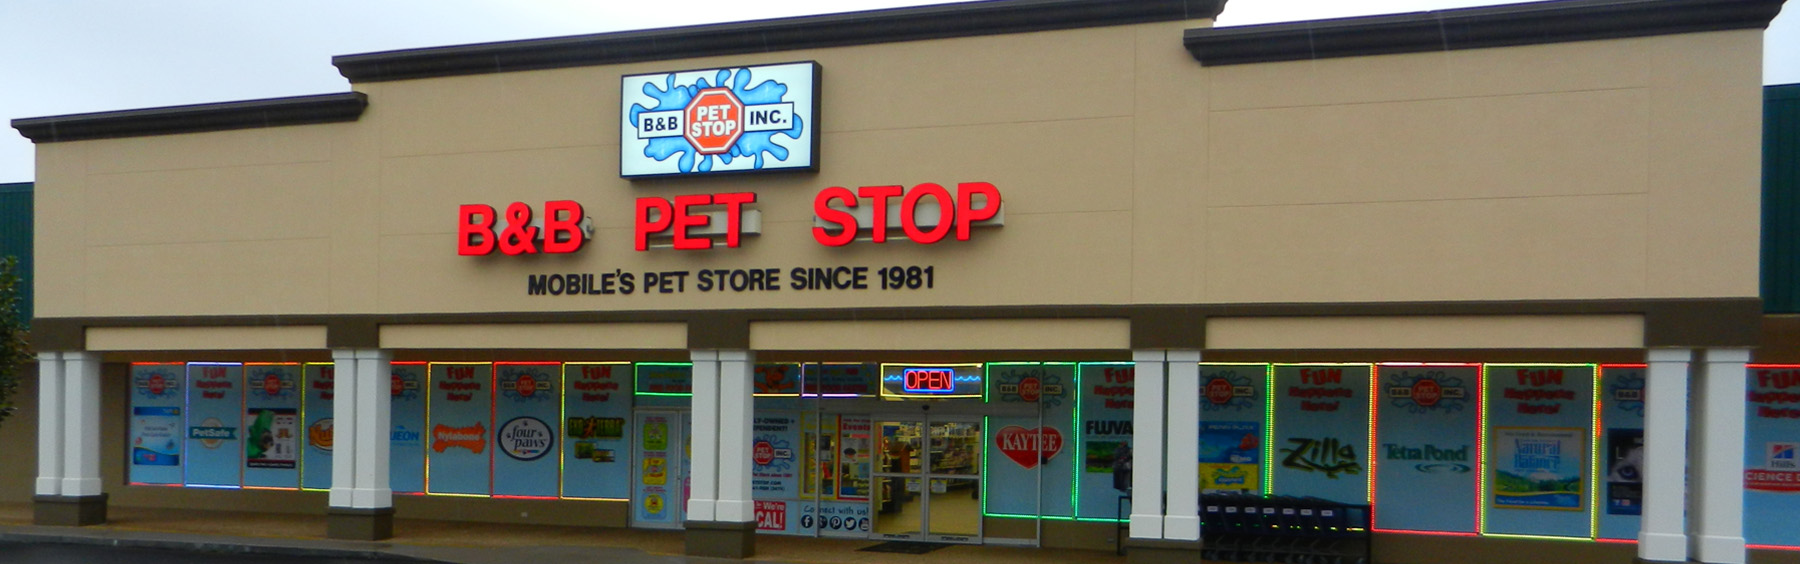 B\u0026B Pet Stop Home Page - B\u0026B Pet Stop